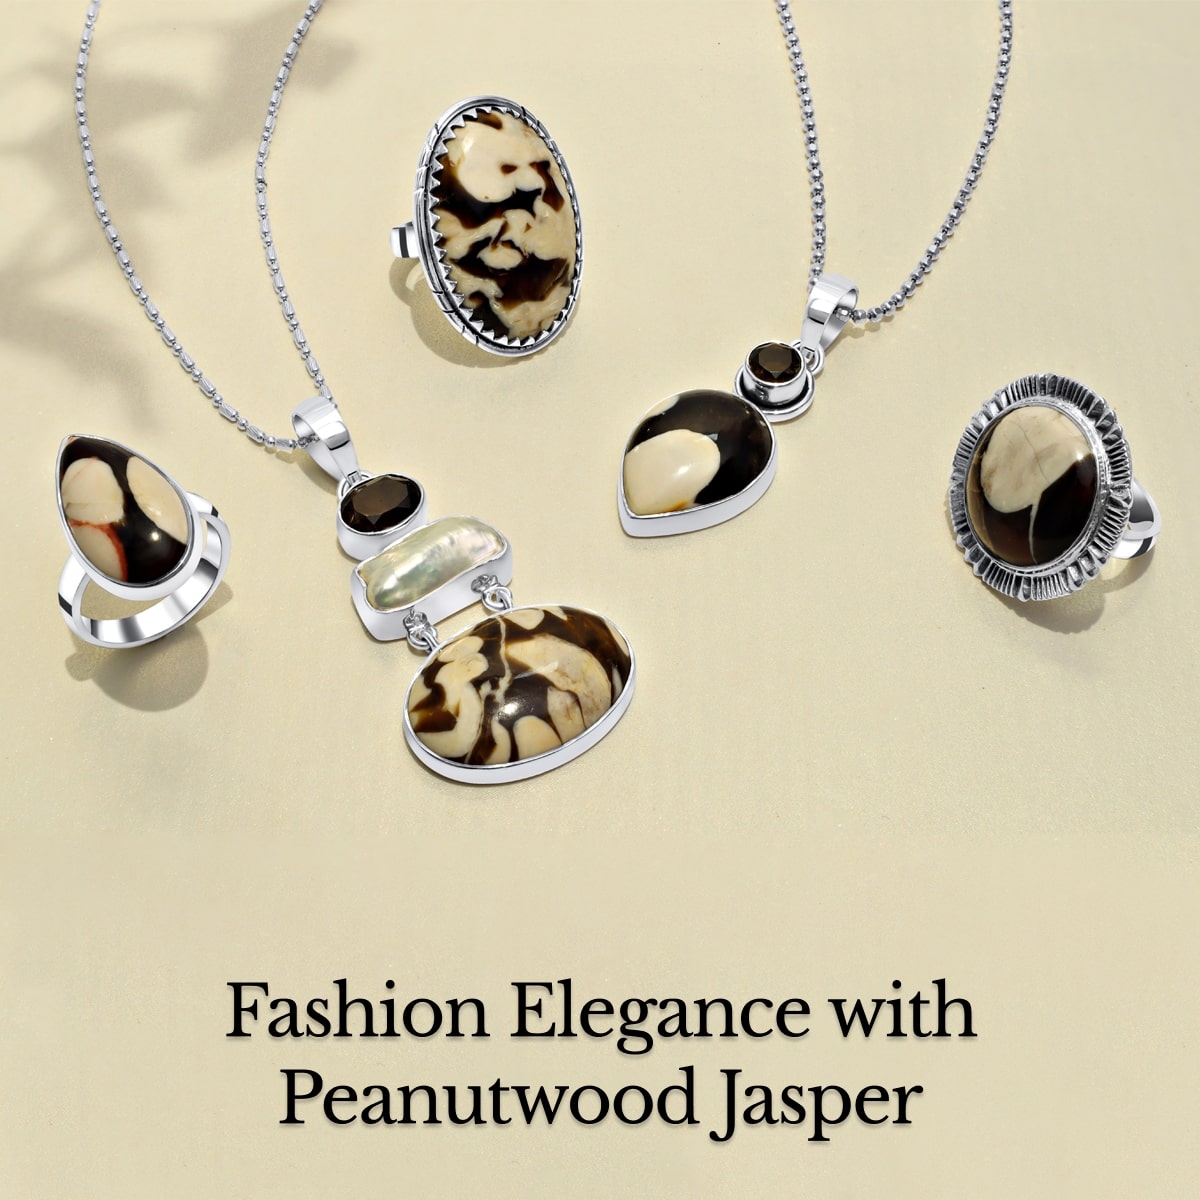 Peanutwood Jasper Jewelry